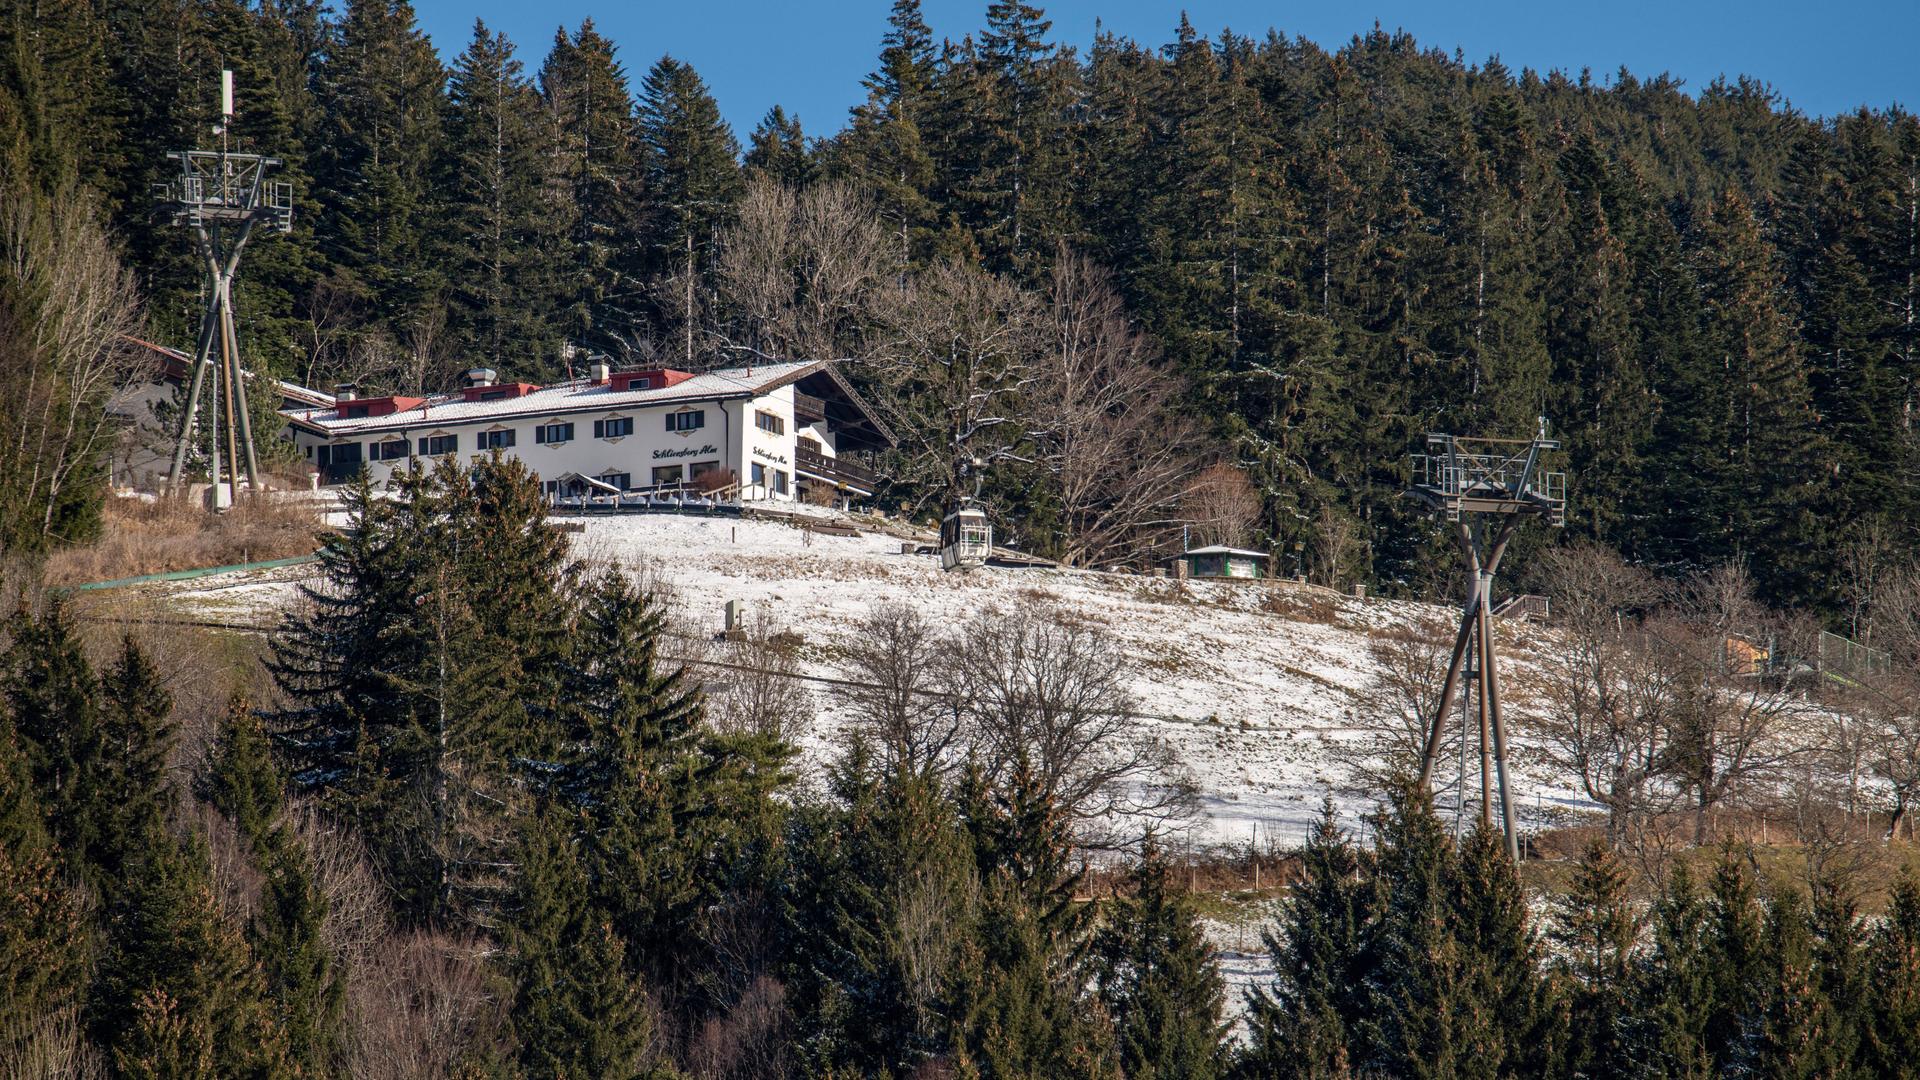 Schliersberg Alm auf 1061m, wenig Schnee, Skibetrieb vor längerem eingestellt, jetzt Freizeitpark, Schliersee, Bayern, 16. Januar 2023 Deutschland, Schliersee, 16.01.2023, Schliersberg Alm mit Seilbahn, sehr wenig Schnee, früher war bei guter Schneelage eine Ski-Abfahrt zum Schliersee möglich, inzwischen ist der Skibetrieb eingestellt, an der Alm gibt es stattdessen jetzt eine Sommerrodelbahn jetzt natürlich geschlossen und einen kleinen Freizeitpark, Alm mit Hotel und Restaurant liegt auf 1061 m Höhe, in den letzten Wochen und Tagen war es zu warm, zu mild, Landschaft zur Zeit überwiegend grün, Winterurlaub, Urlaubsregion, Tourismus, Alpen, Klima, Symbolfoto Klimawandel, Winter, Winterwetter, Januar 2023, Bayern, bayerisch, bayeri